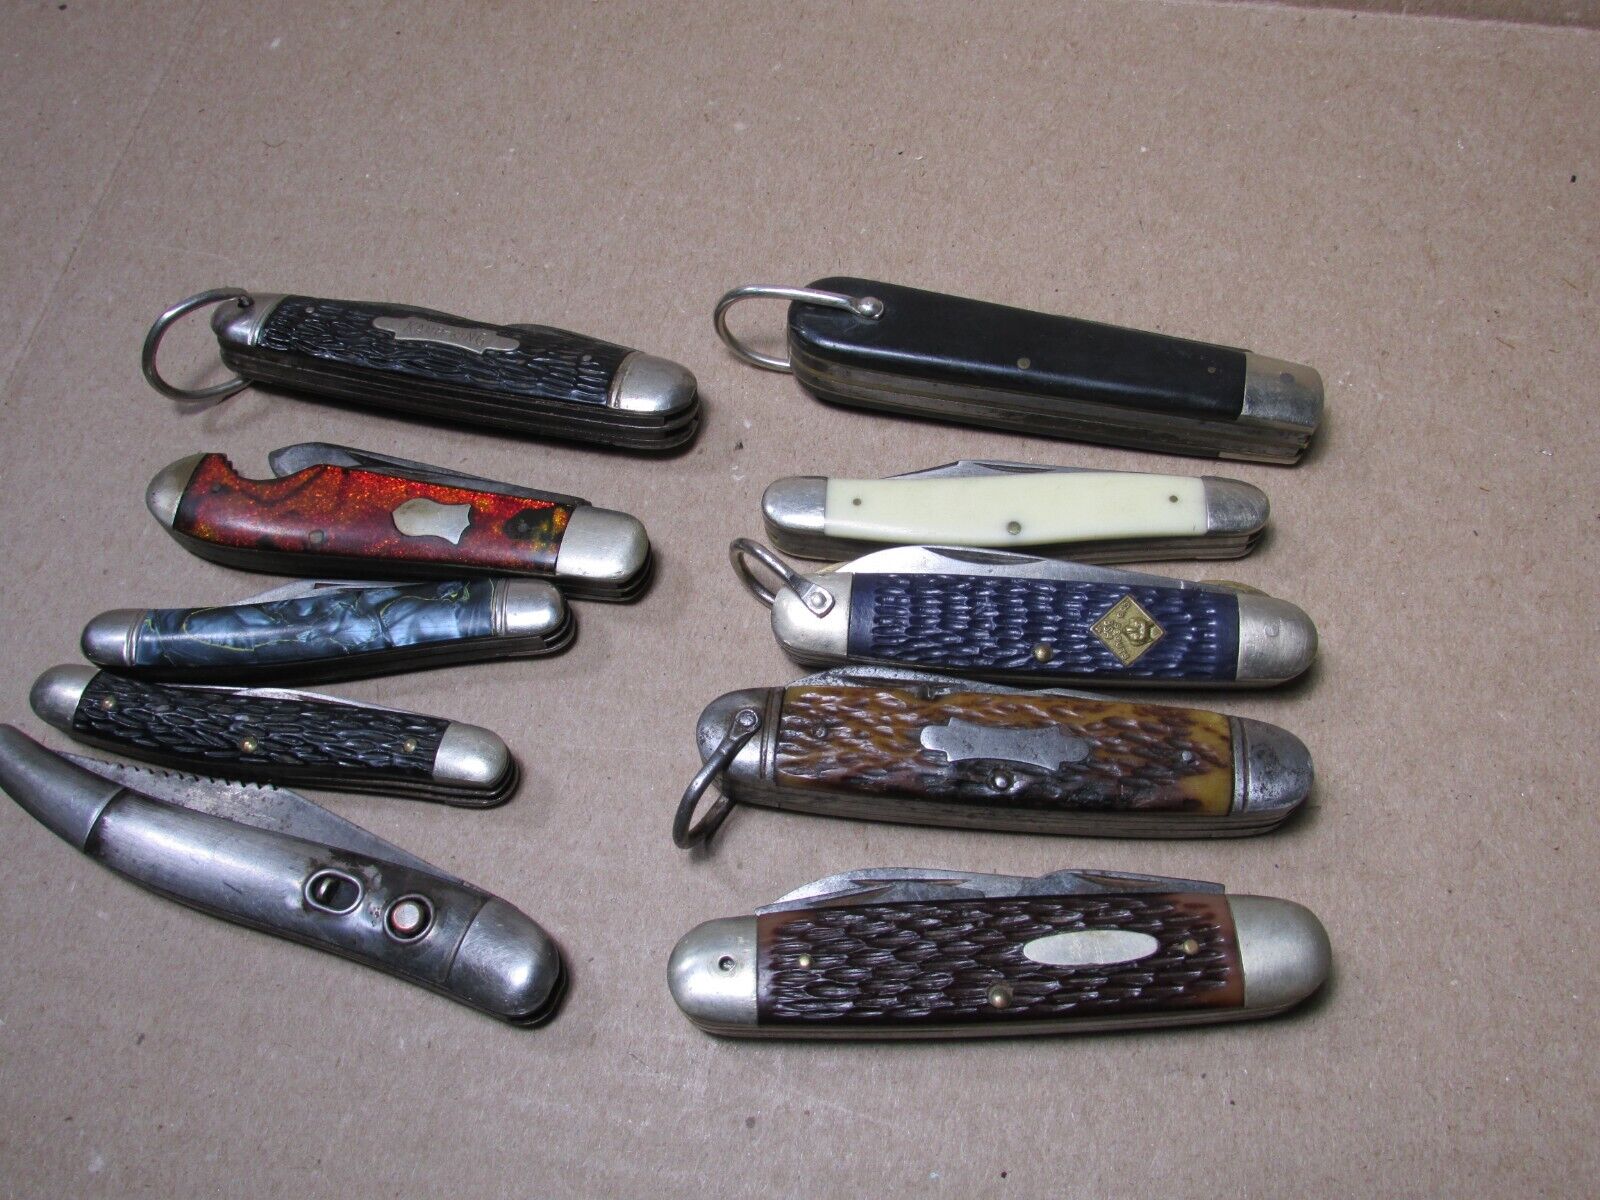 Lot of 10 Vintage Pocket Knives Camillus Ulster Hammer Brand TL-29